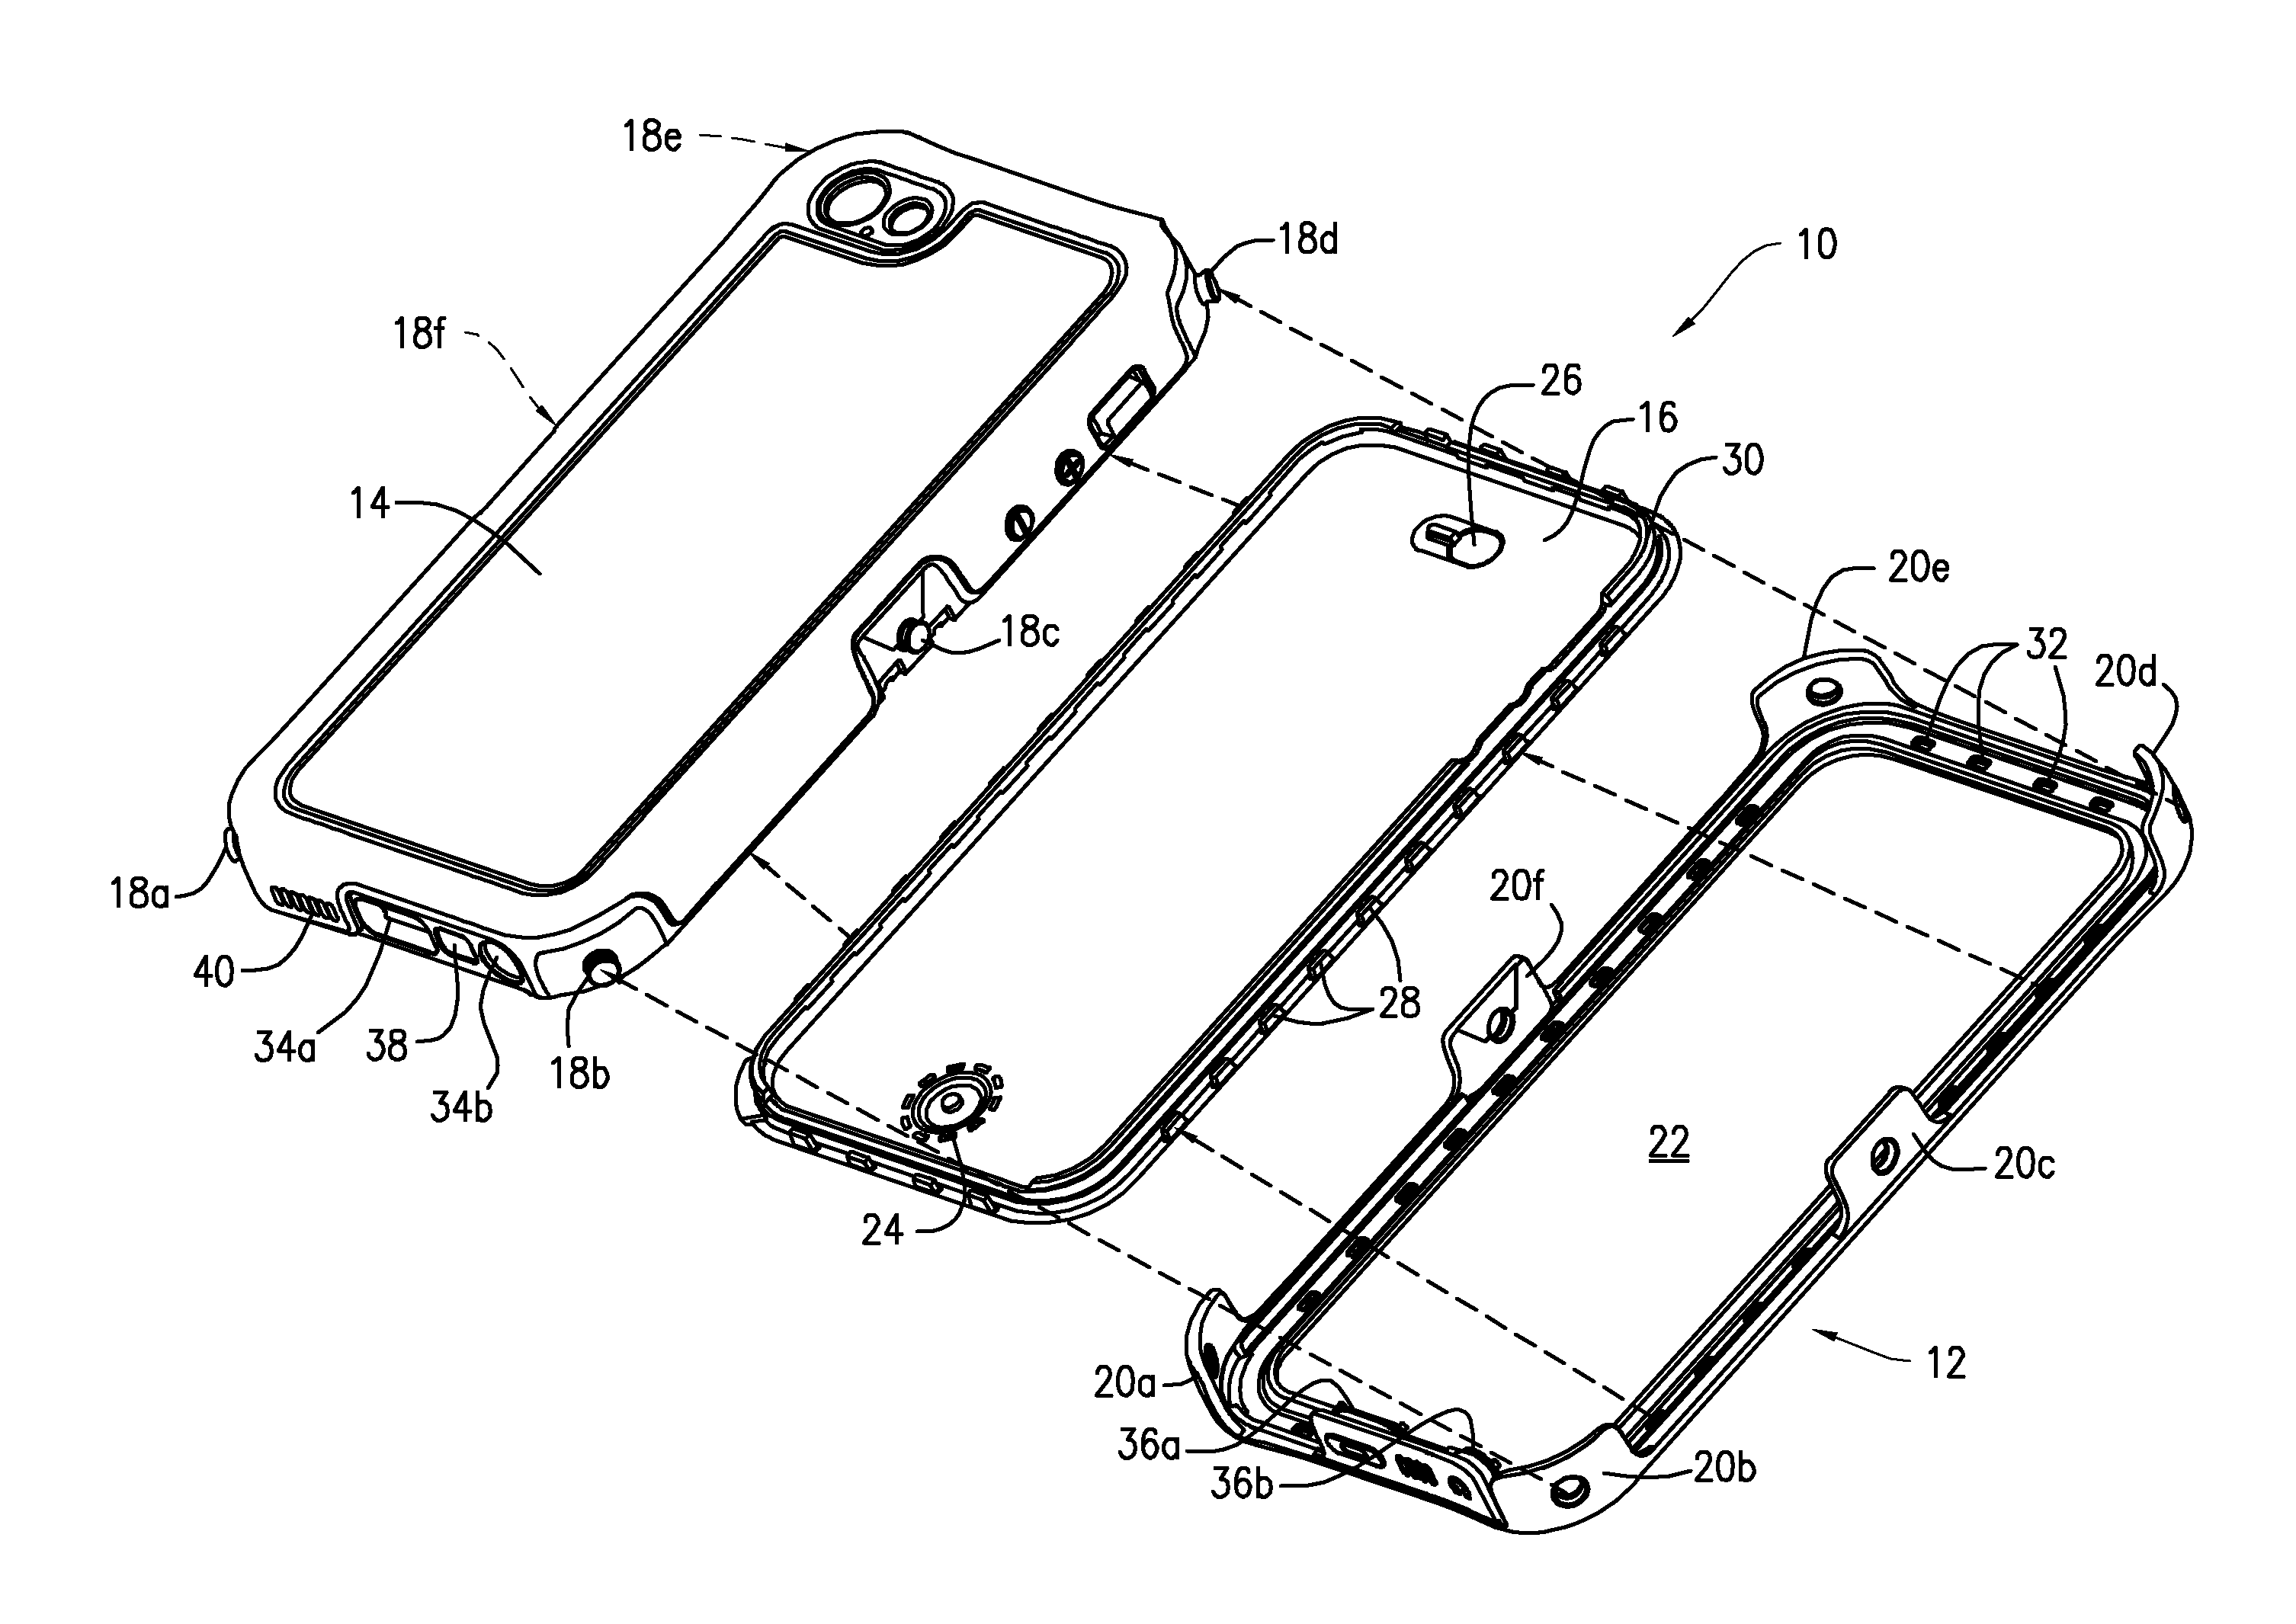 Waterproof mobile device case